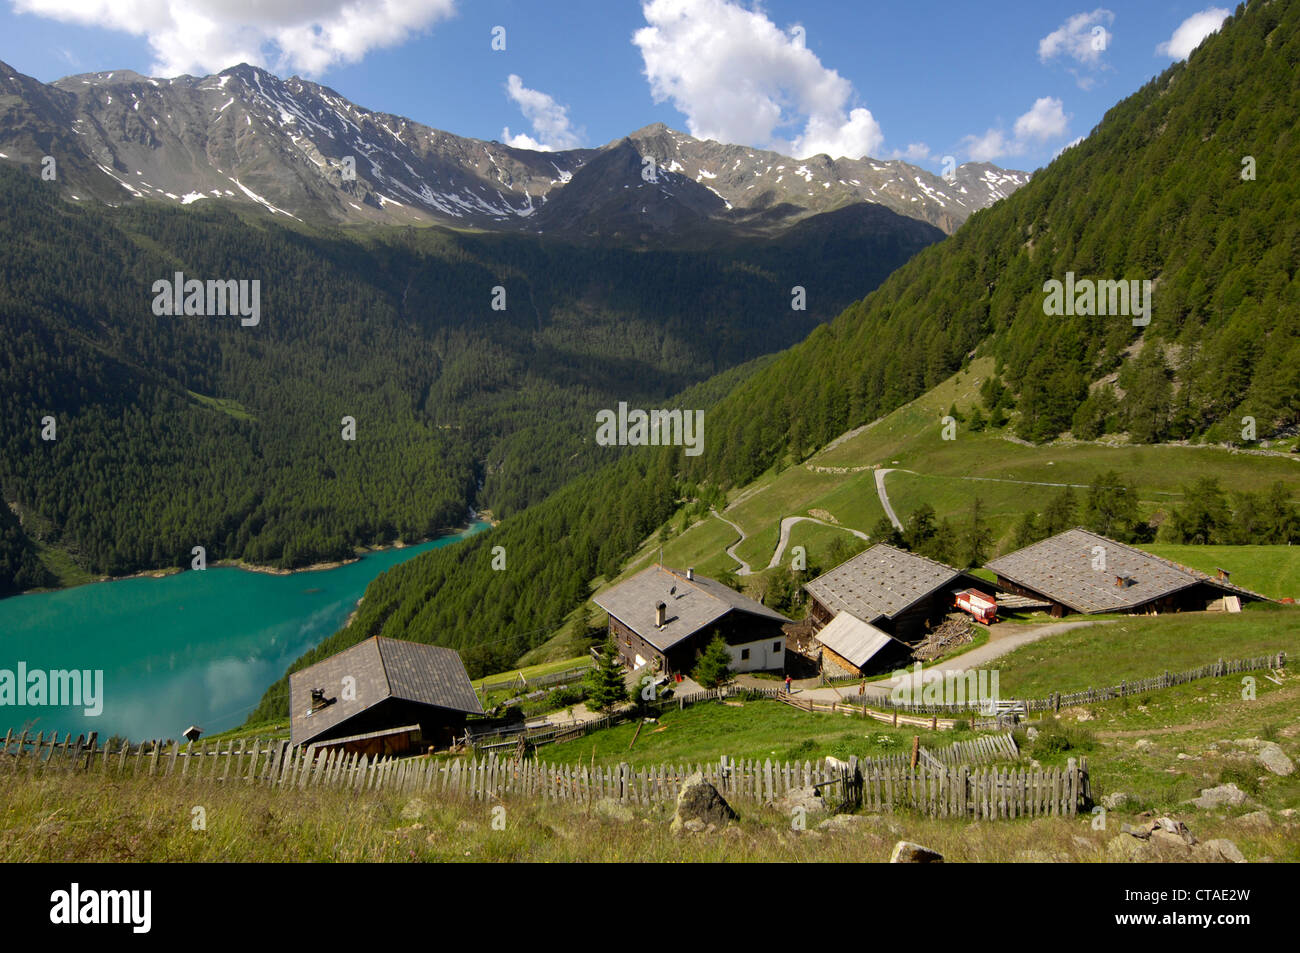 Casali di Campagna, Lago di montagna nella valle, serbatoio di Vernago, Val Senales, Val Venosta, Alto Adige, Trentino Alto Adige, Italia Foto Stock